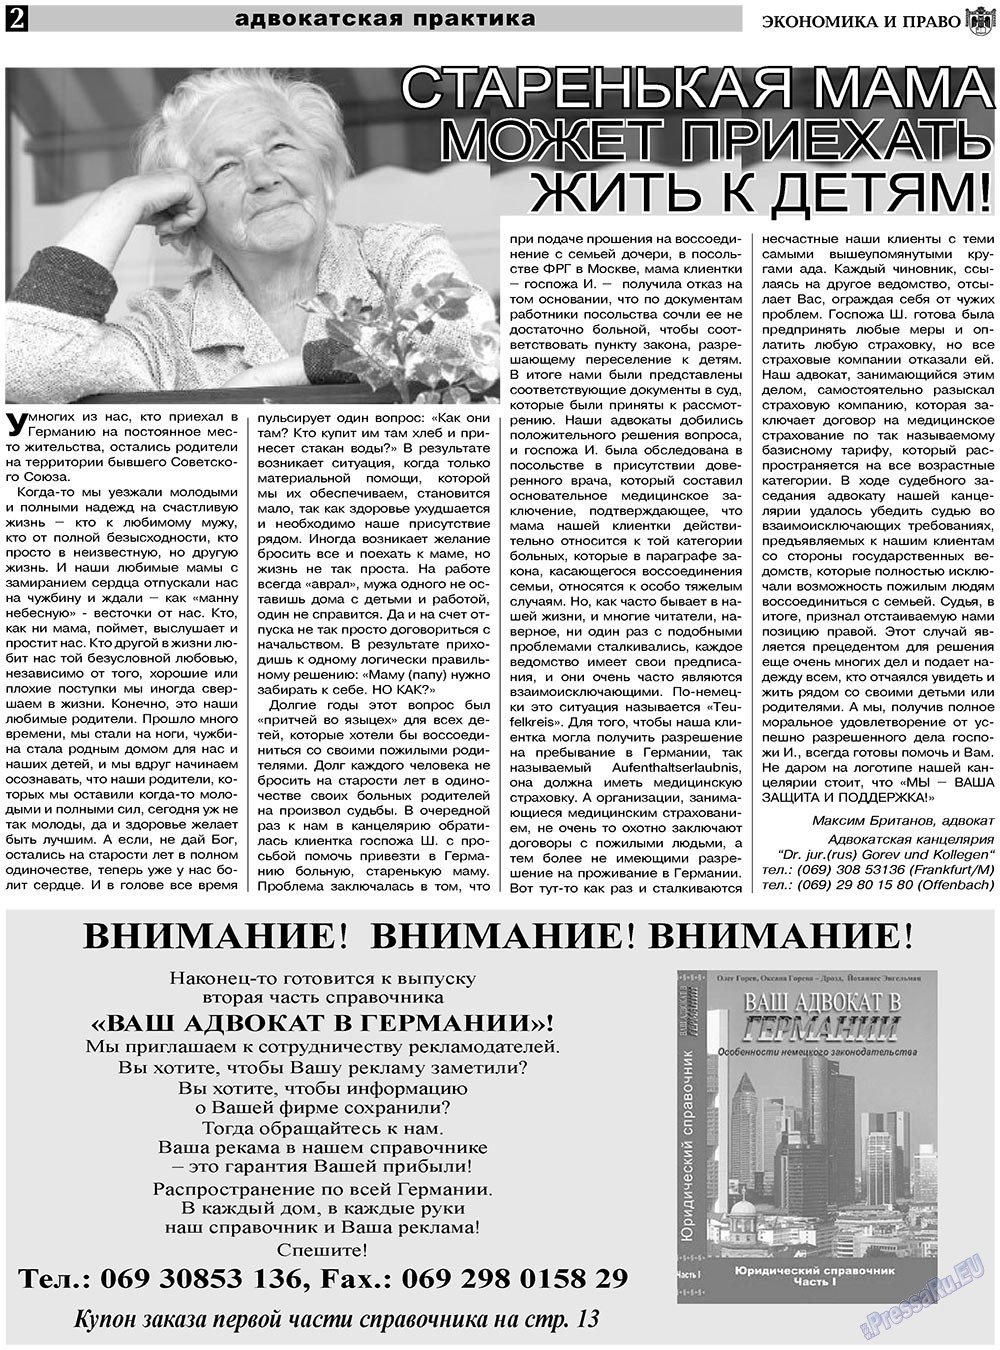 Экономика и право, газета. 2010 №12 стр.2